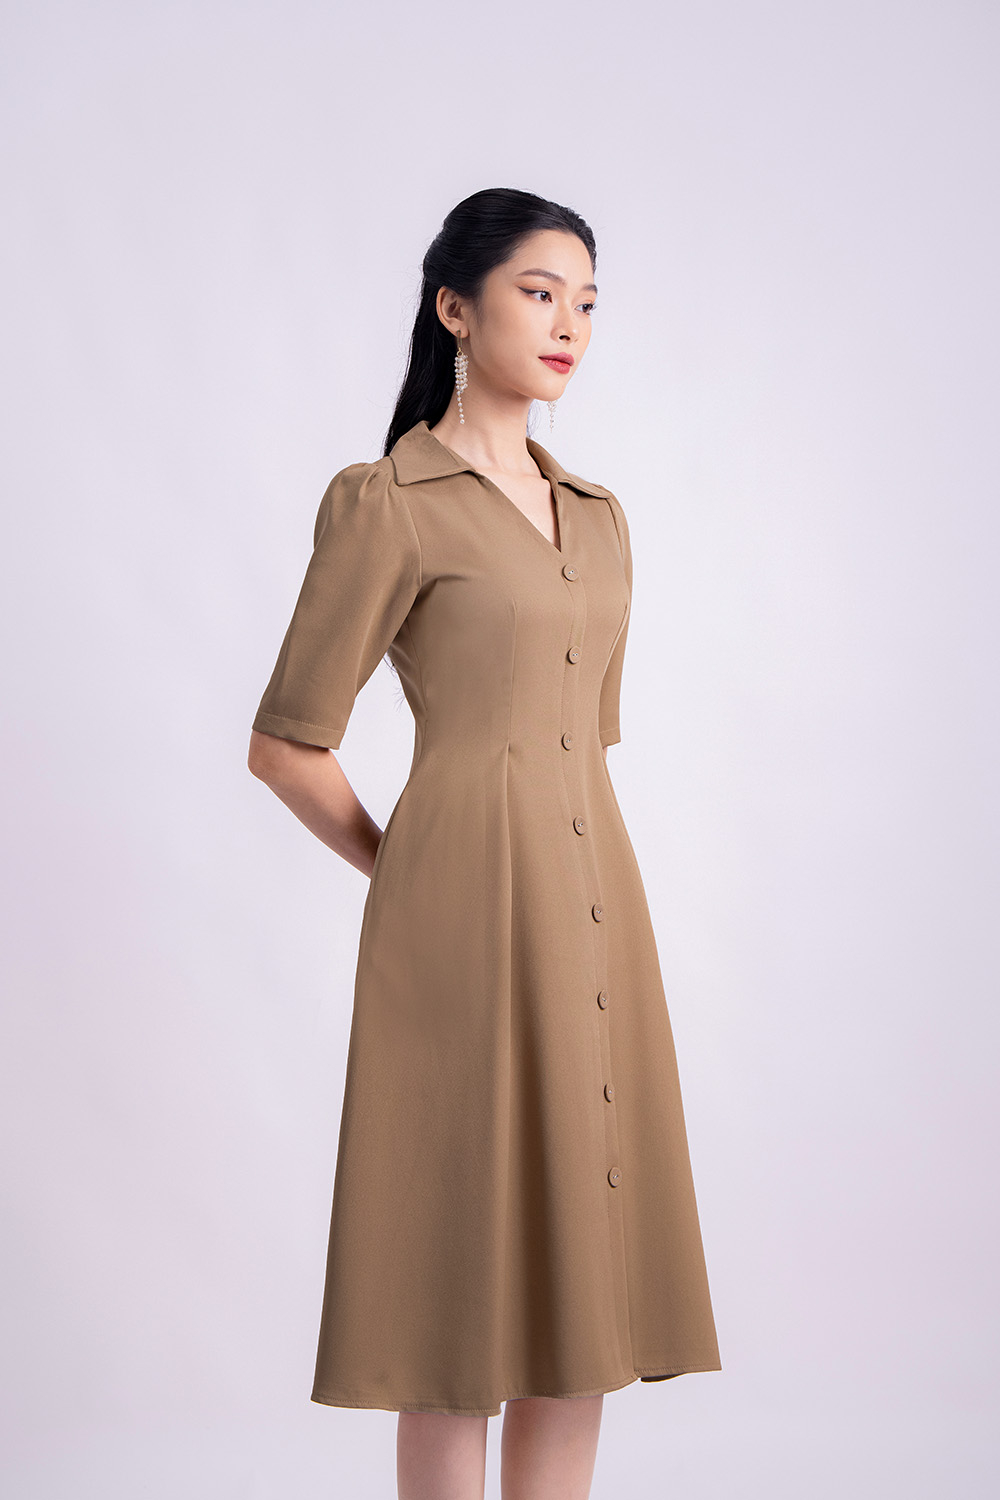 Đầm Xòe Công Sở Xanh Hoạ Tiết 3D - Đầm Quỳnh Anh Luxury Fashion